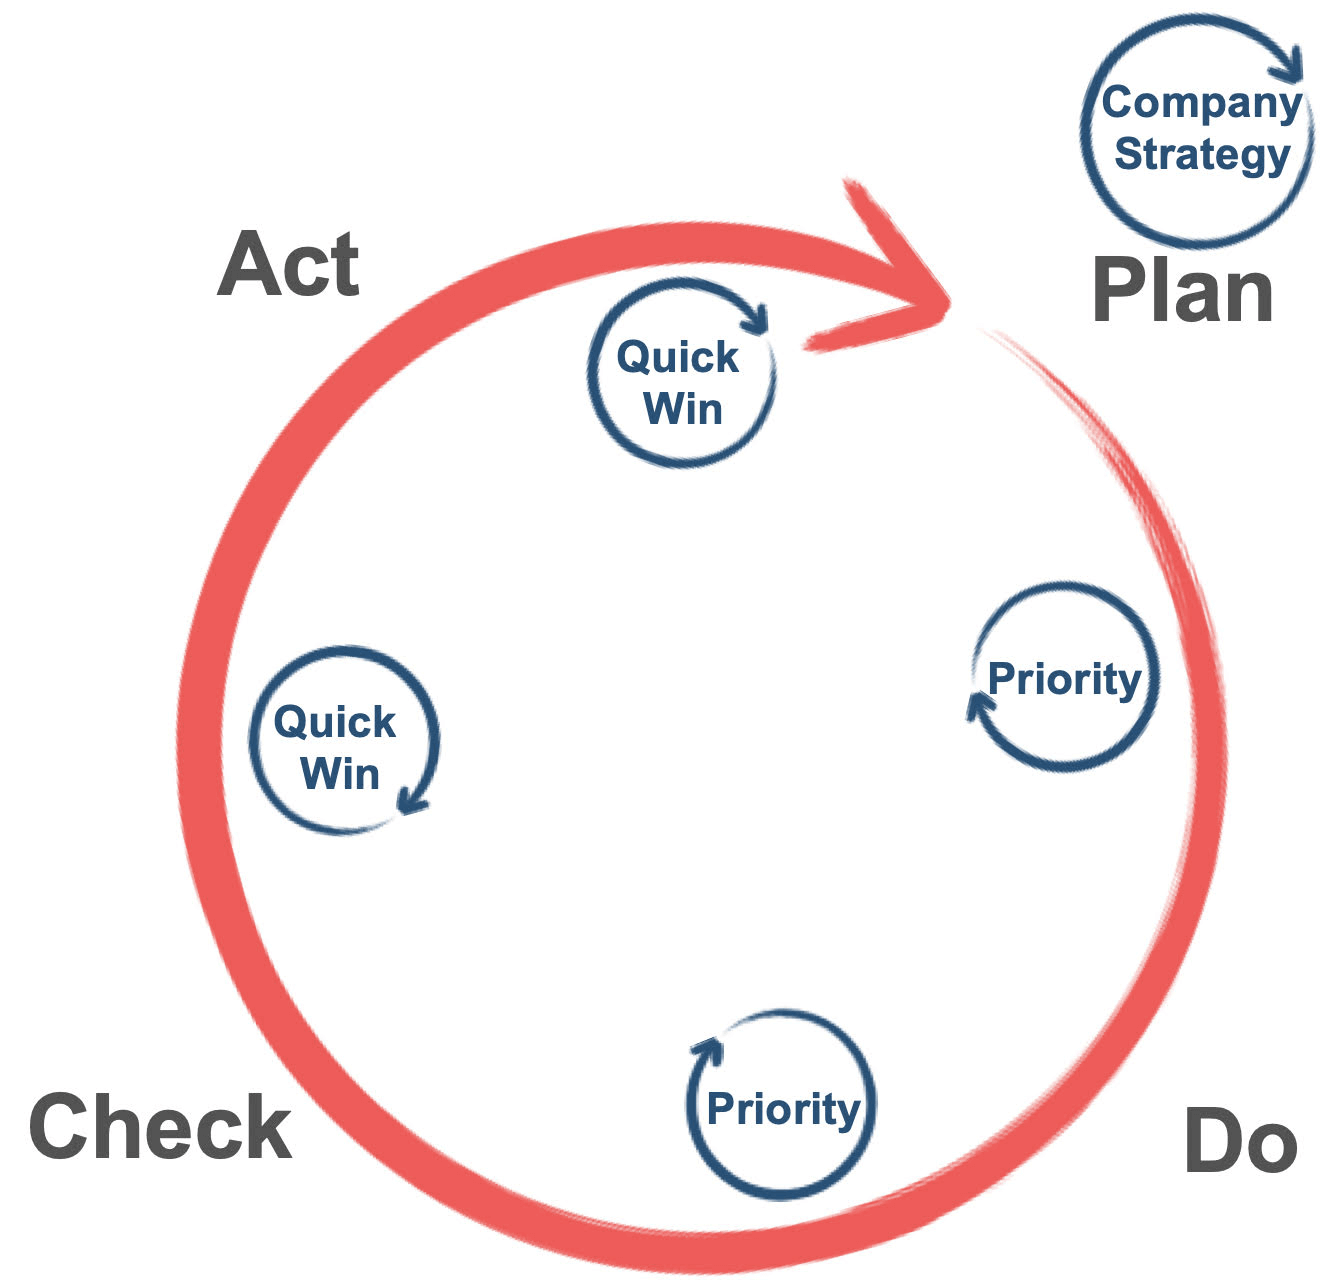 Company strategy diagram